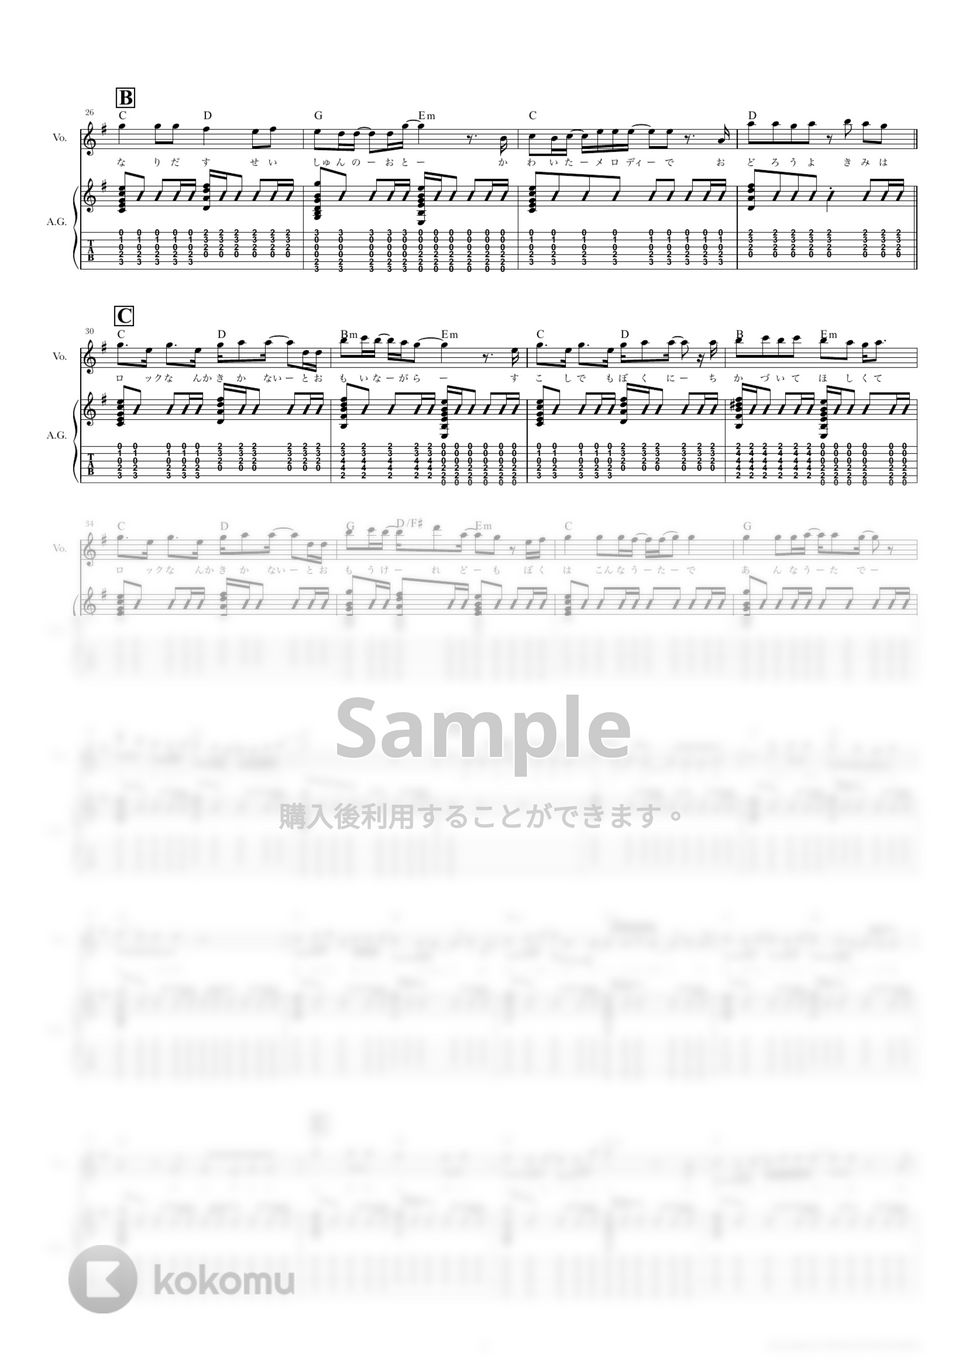 あいみょん - 君はロックを聴かない (弾き語り・歌詞・コード付き) by TRIAD GUITAR SCHOOL